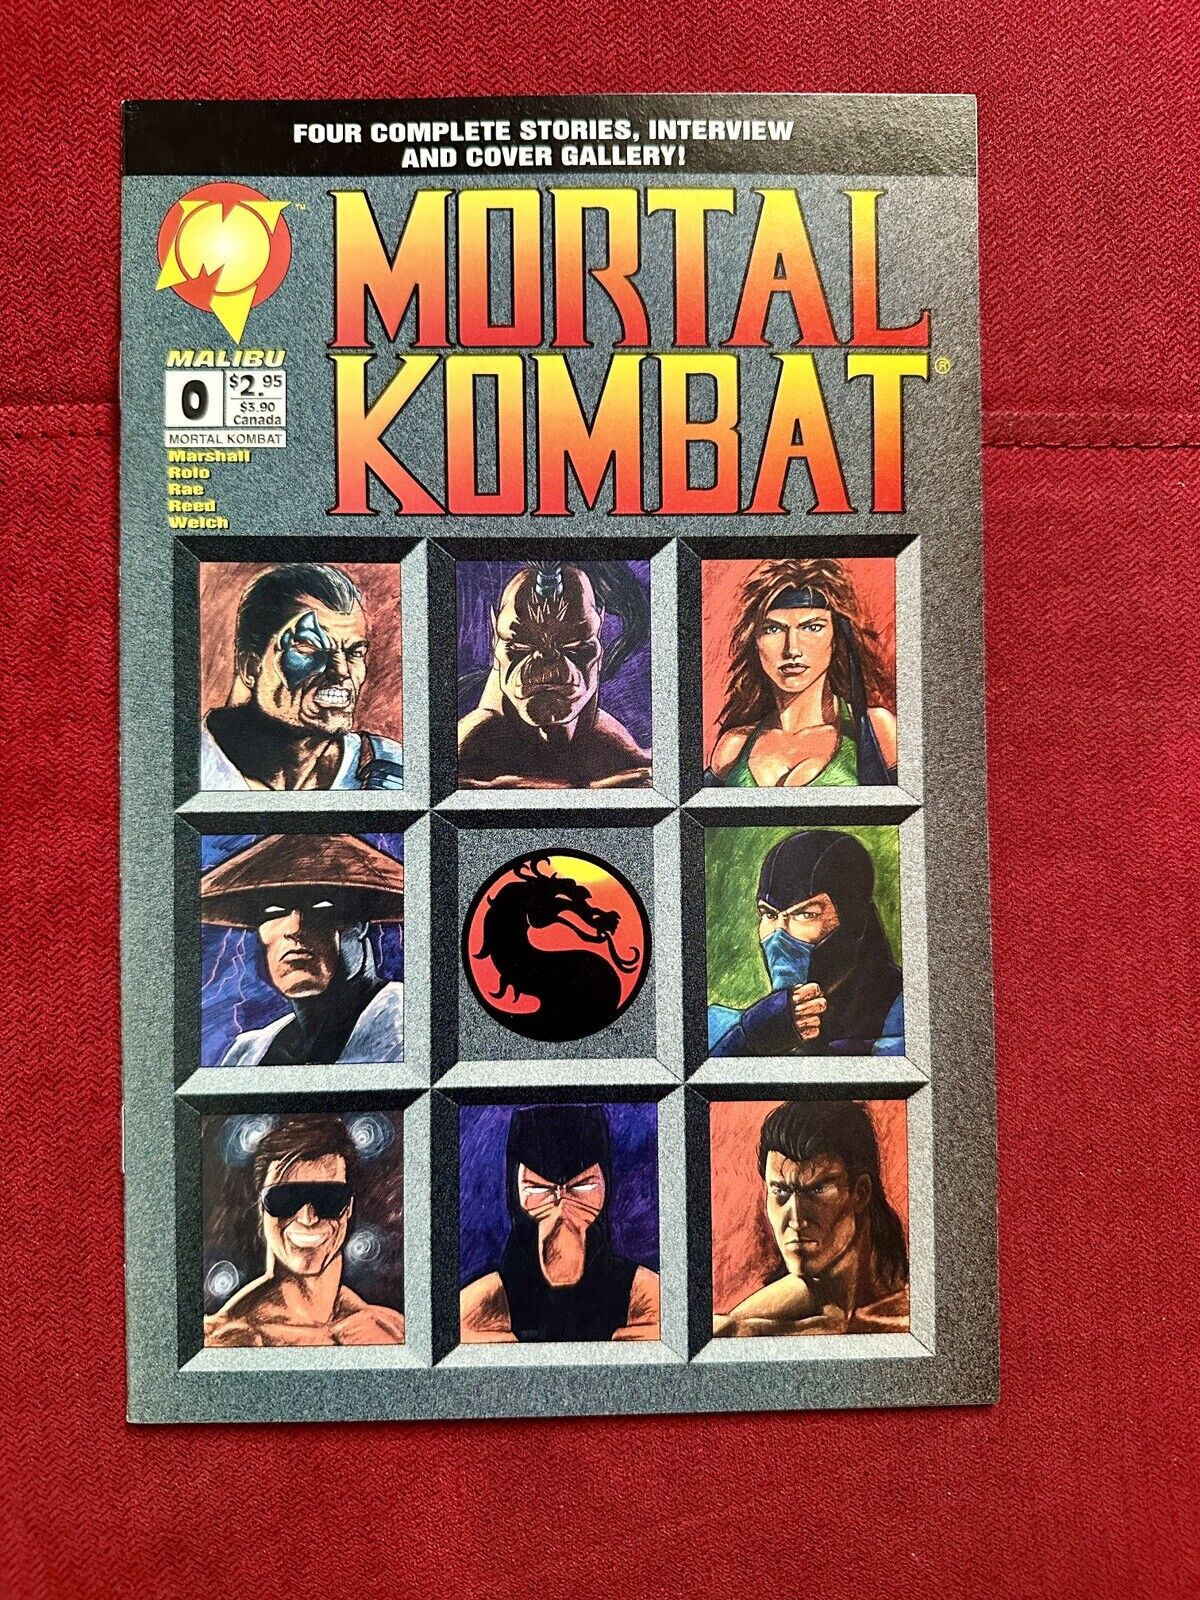 Mortal Kombat:Blood And Thunder #0, Malibu Comics, 1994